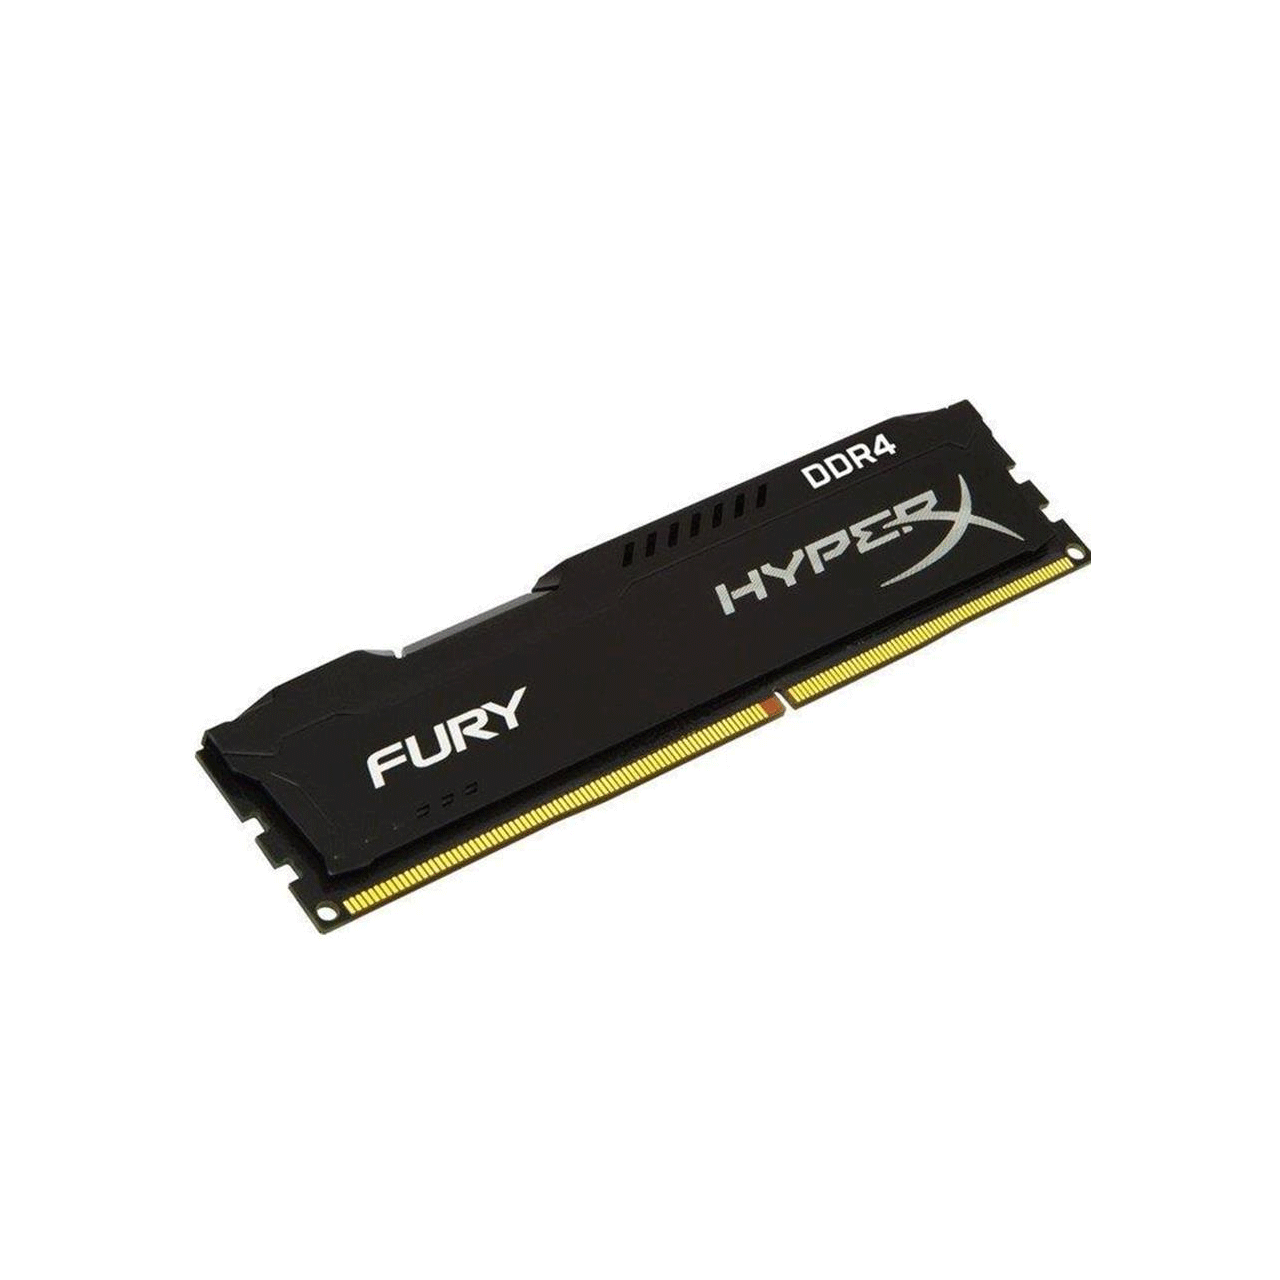 رم-کامپیوتر-کینگستون-مدل-HyperX-Fury-DDR4-2400MHz-CL15-ظرفیت-4-گیگ0ابایت